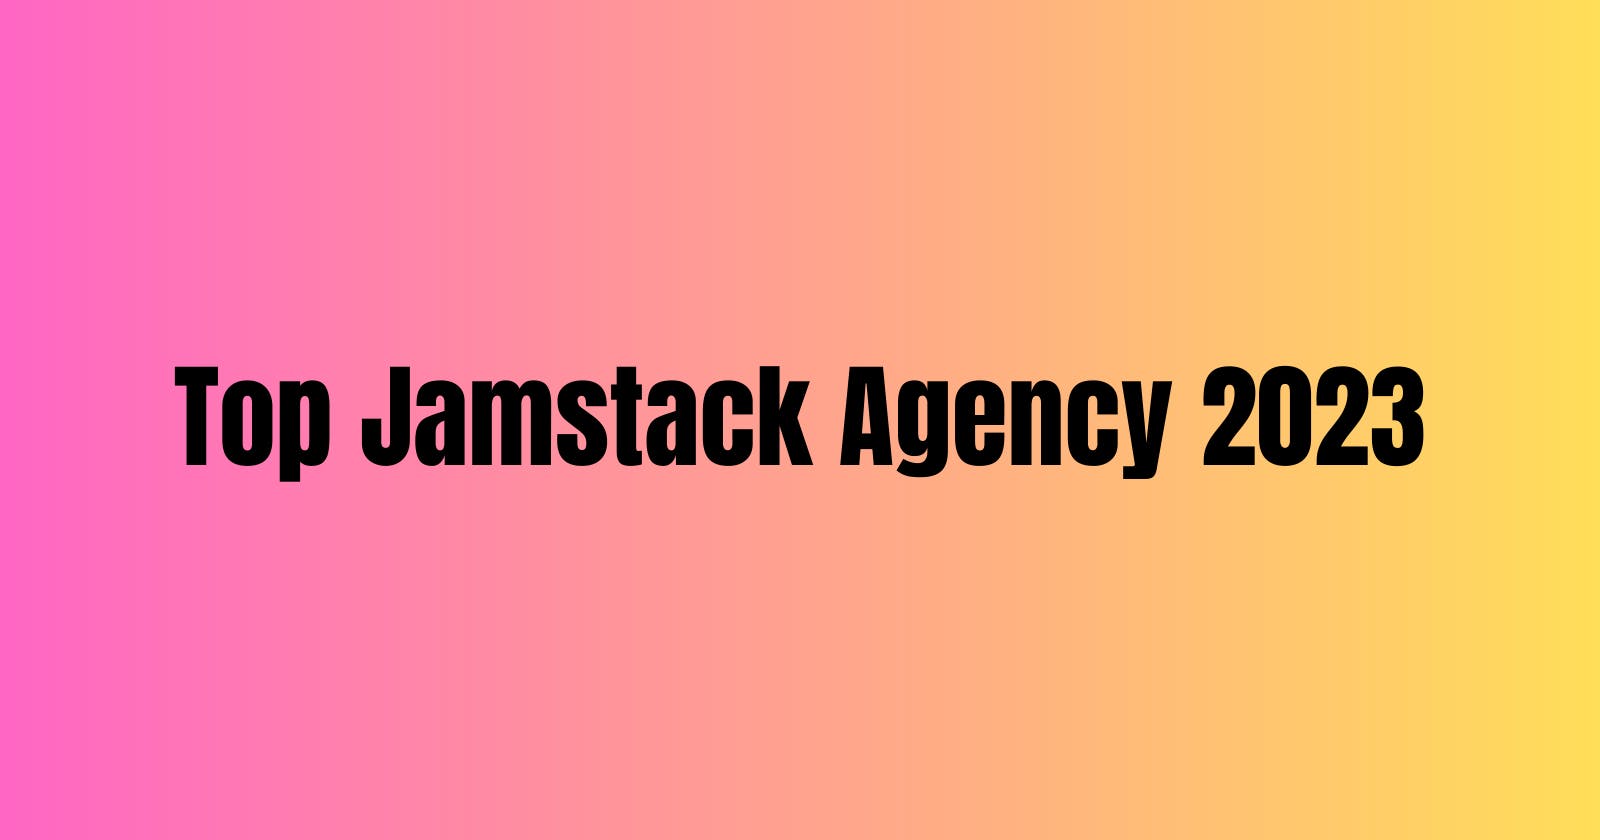 Top Jamstack Agency In 2023